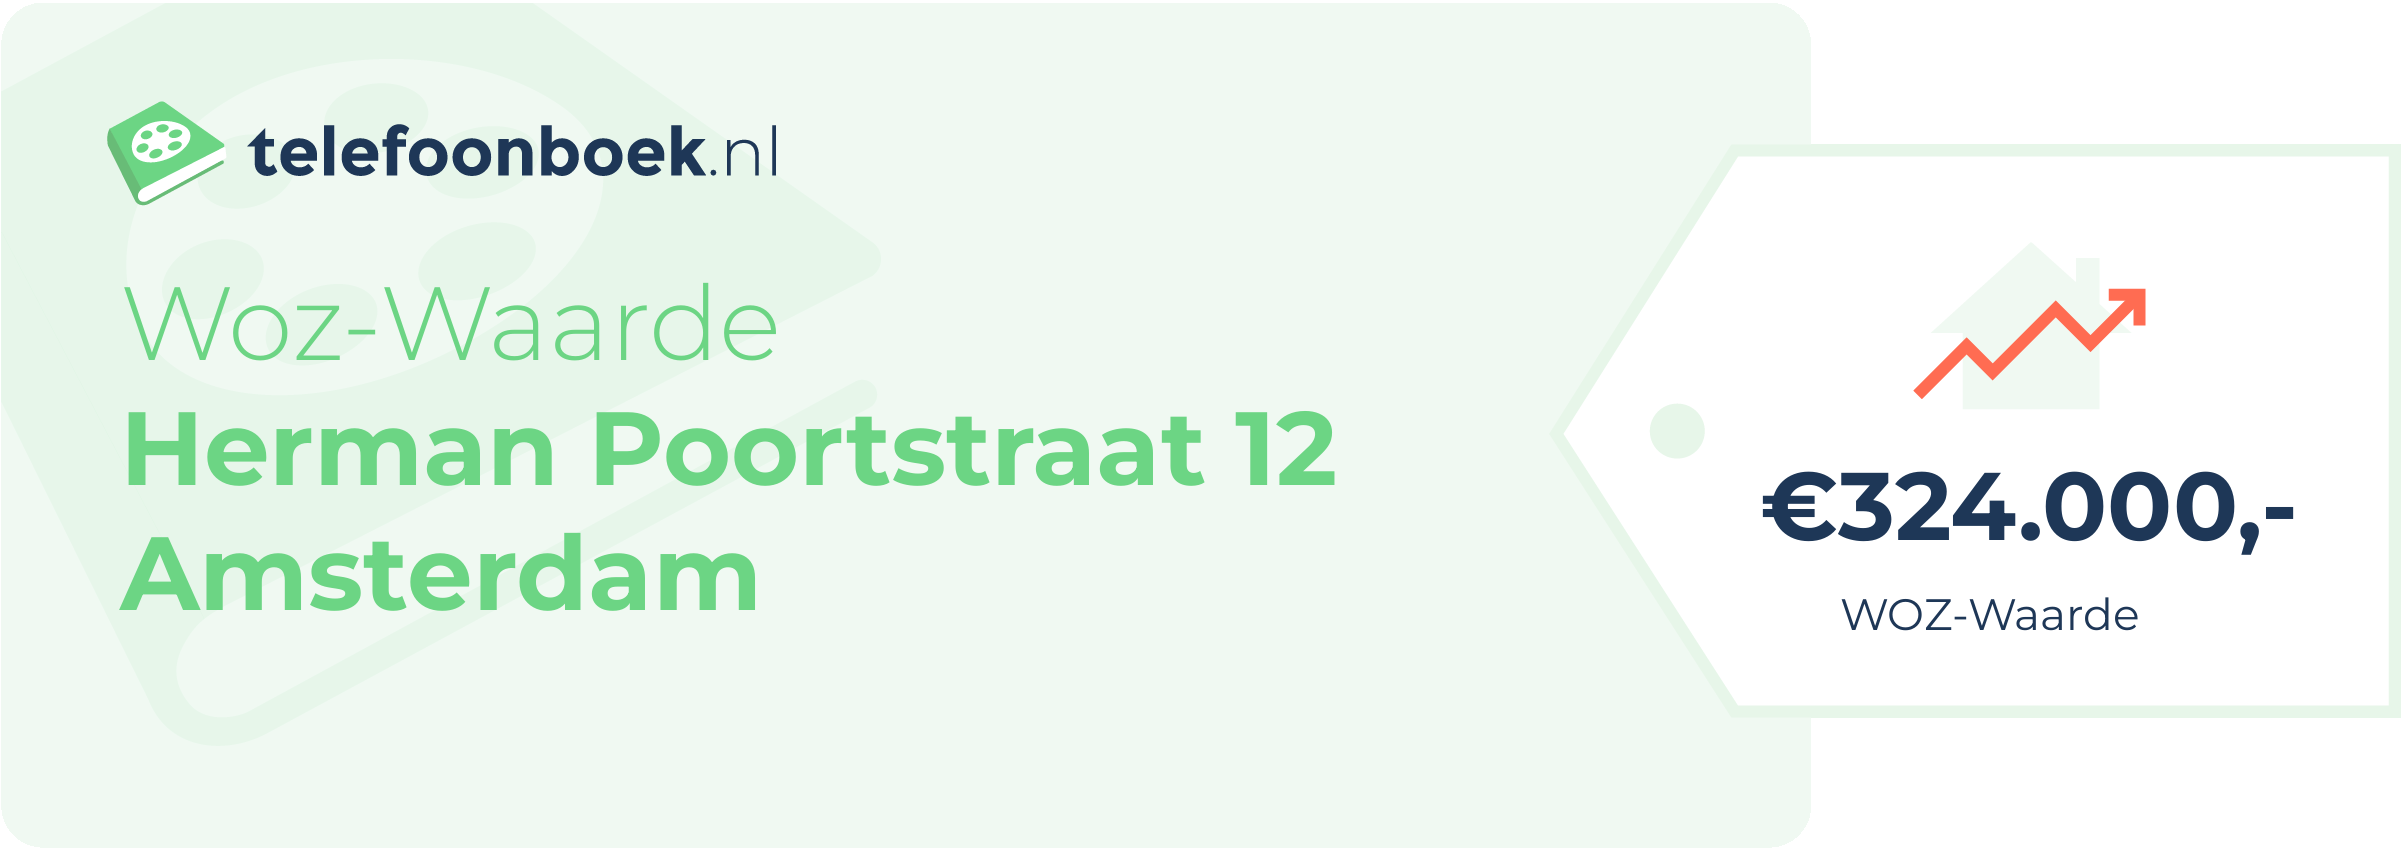 WOZ-waarde Herman Poortstraat 12 Amsterdam